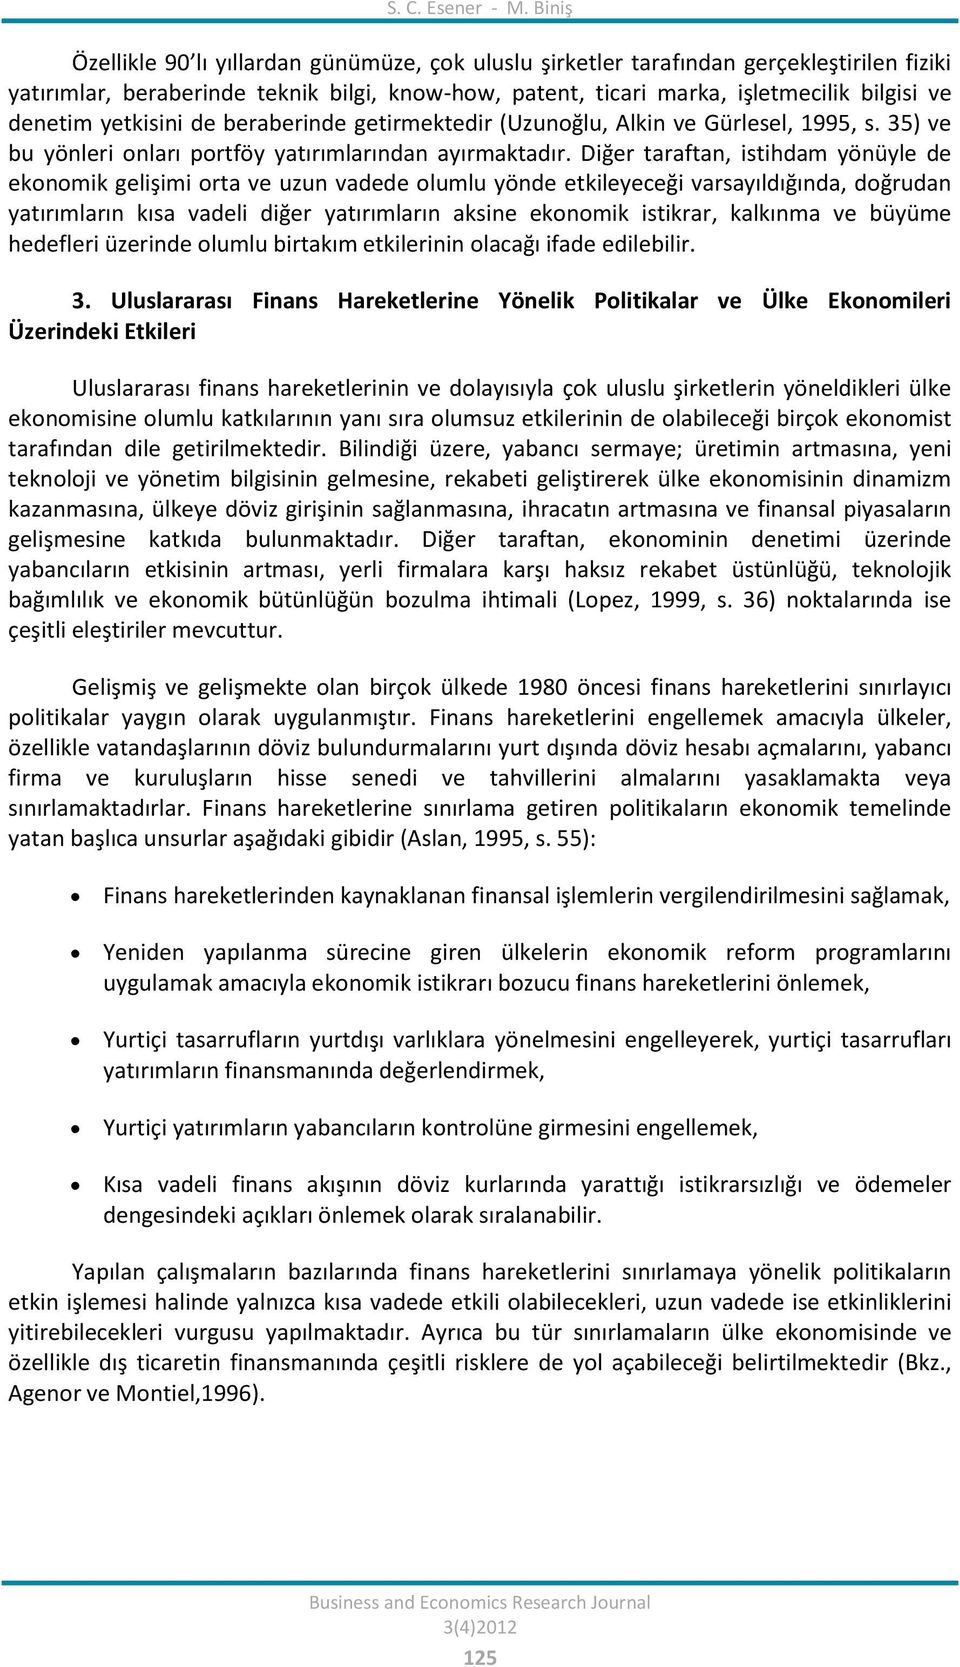 yetkisini de beraberinde getirmektedir (Uzunoğlu, Alkin ve Gürlesel, 1995, s. 35) ve bu yönleri onları portföy yatırımlarından ayırmaktadır.